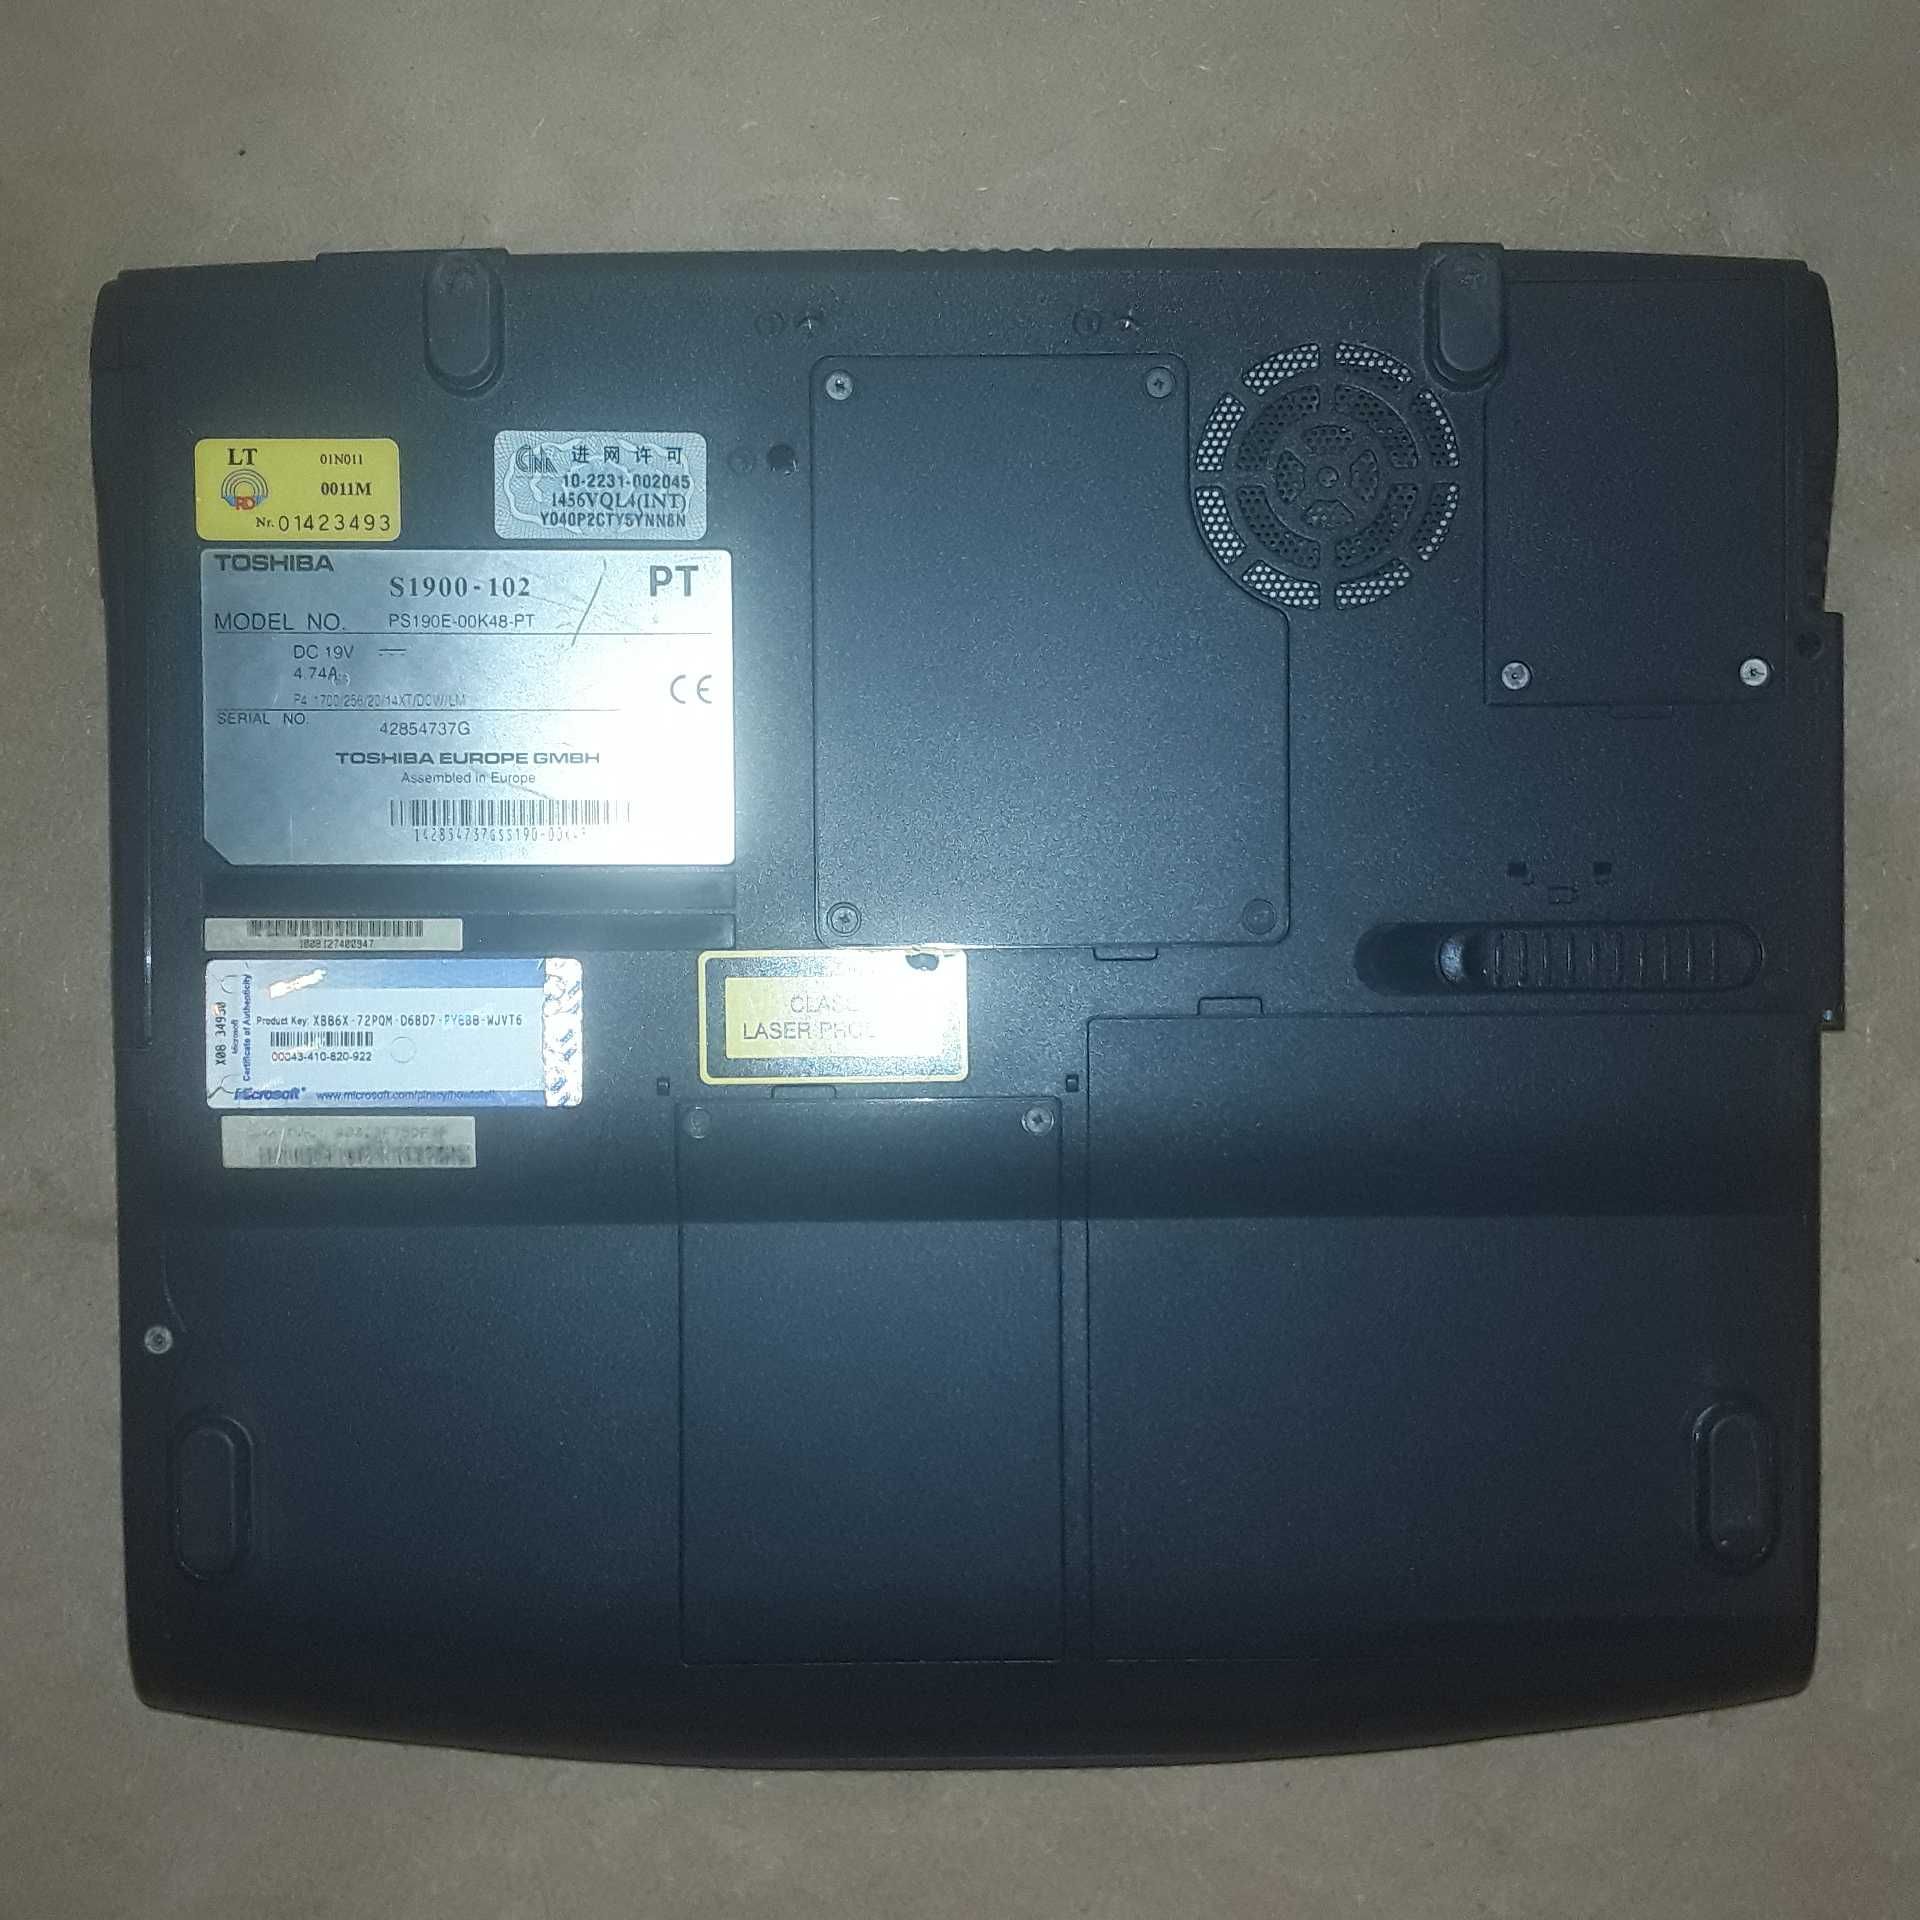 Portátil Toshiba Satellite S1900 modelo 102 [Sem disco rígido]